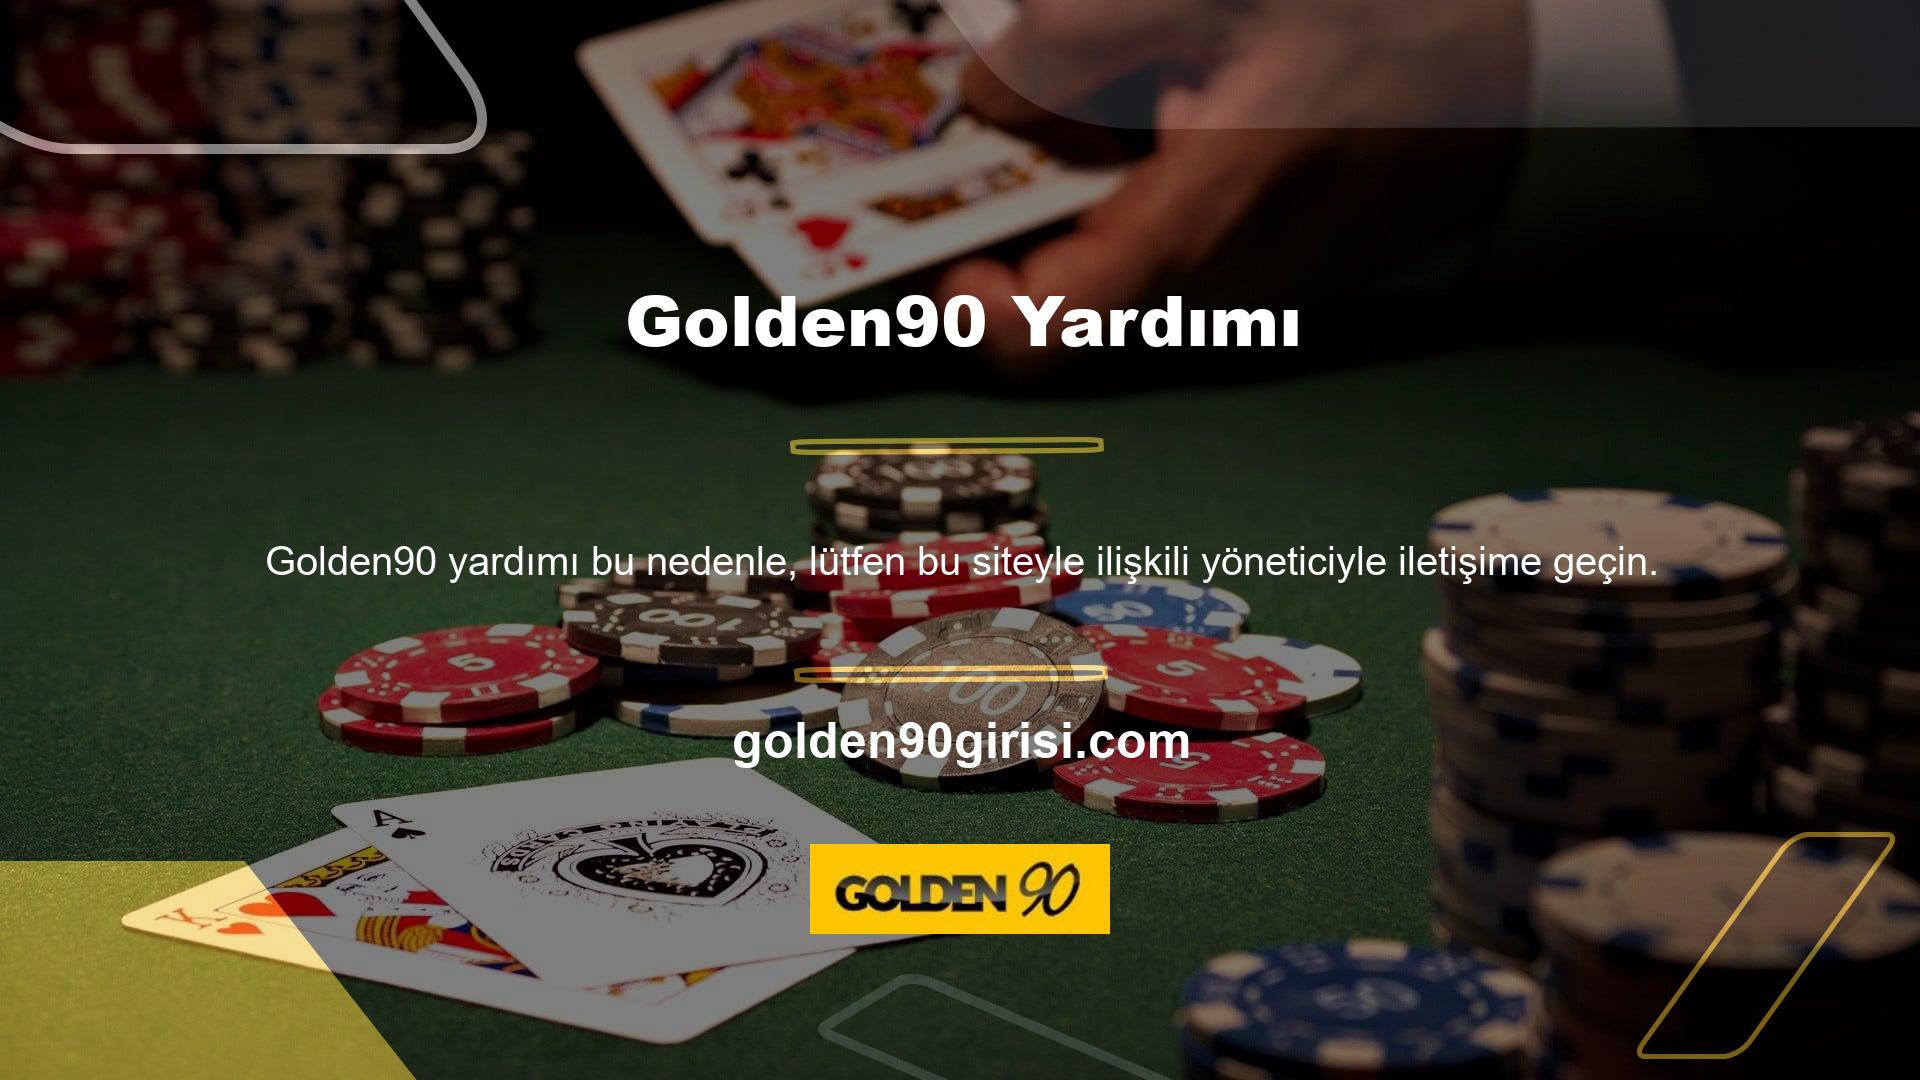 Golden90 destek ekibi size yardımcı olmaktan mutluluk duyacaktır